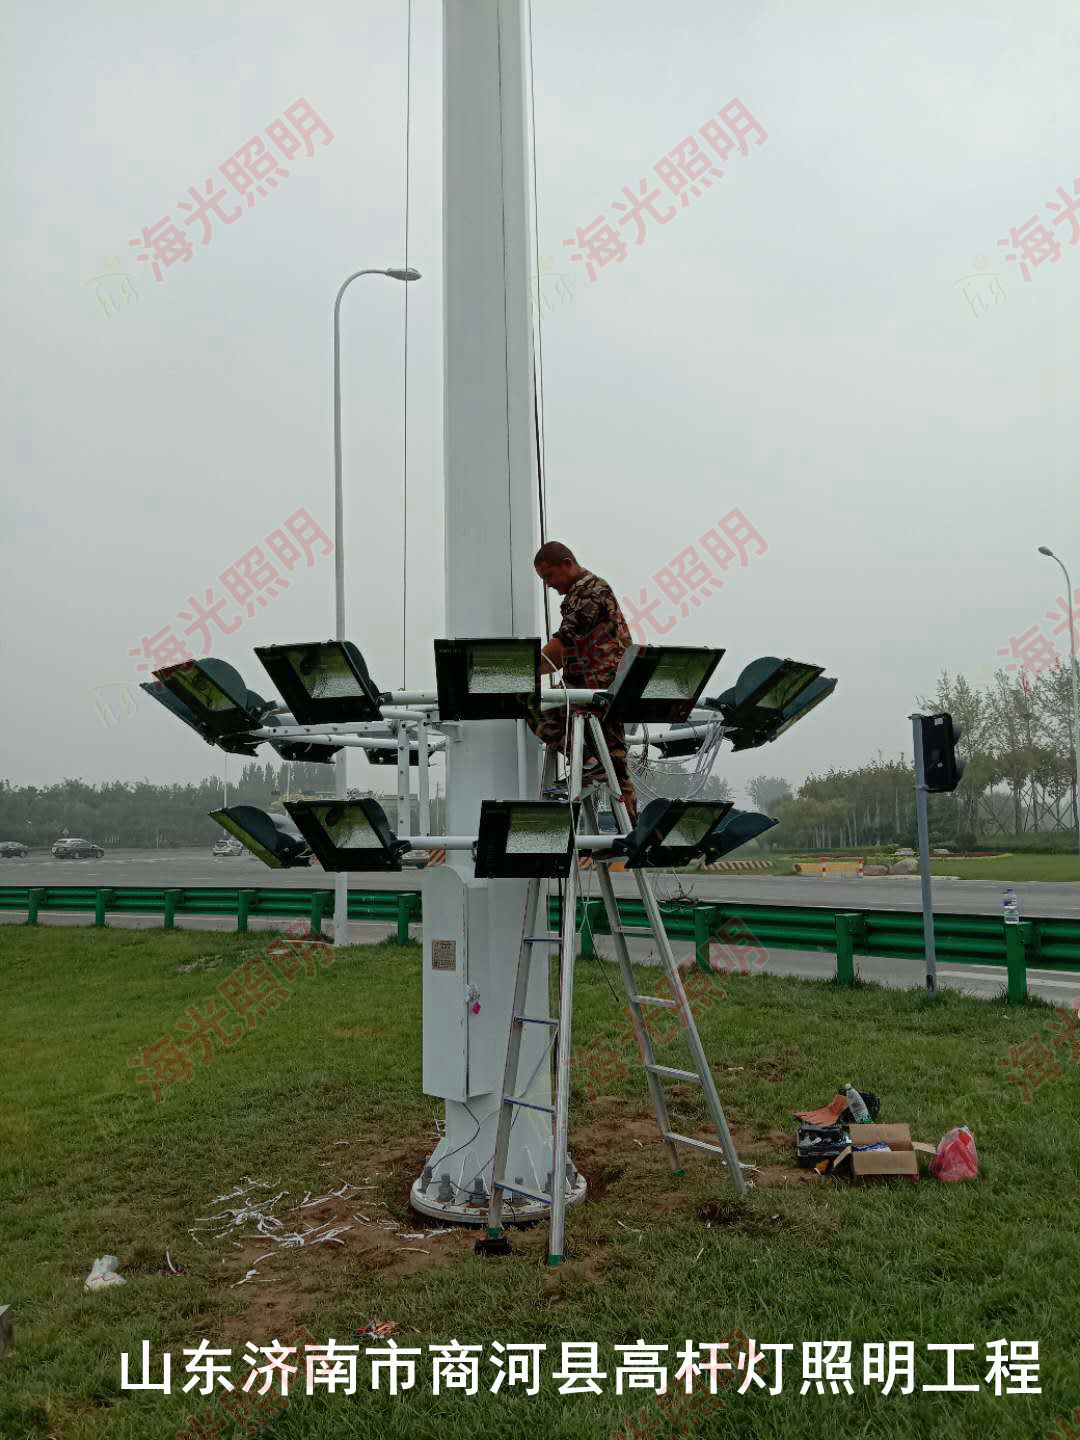 山東省濟南市商河縣高桿燈照明工程項目